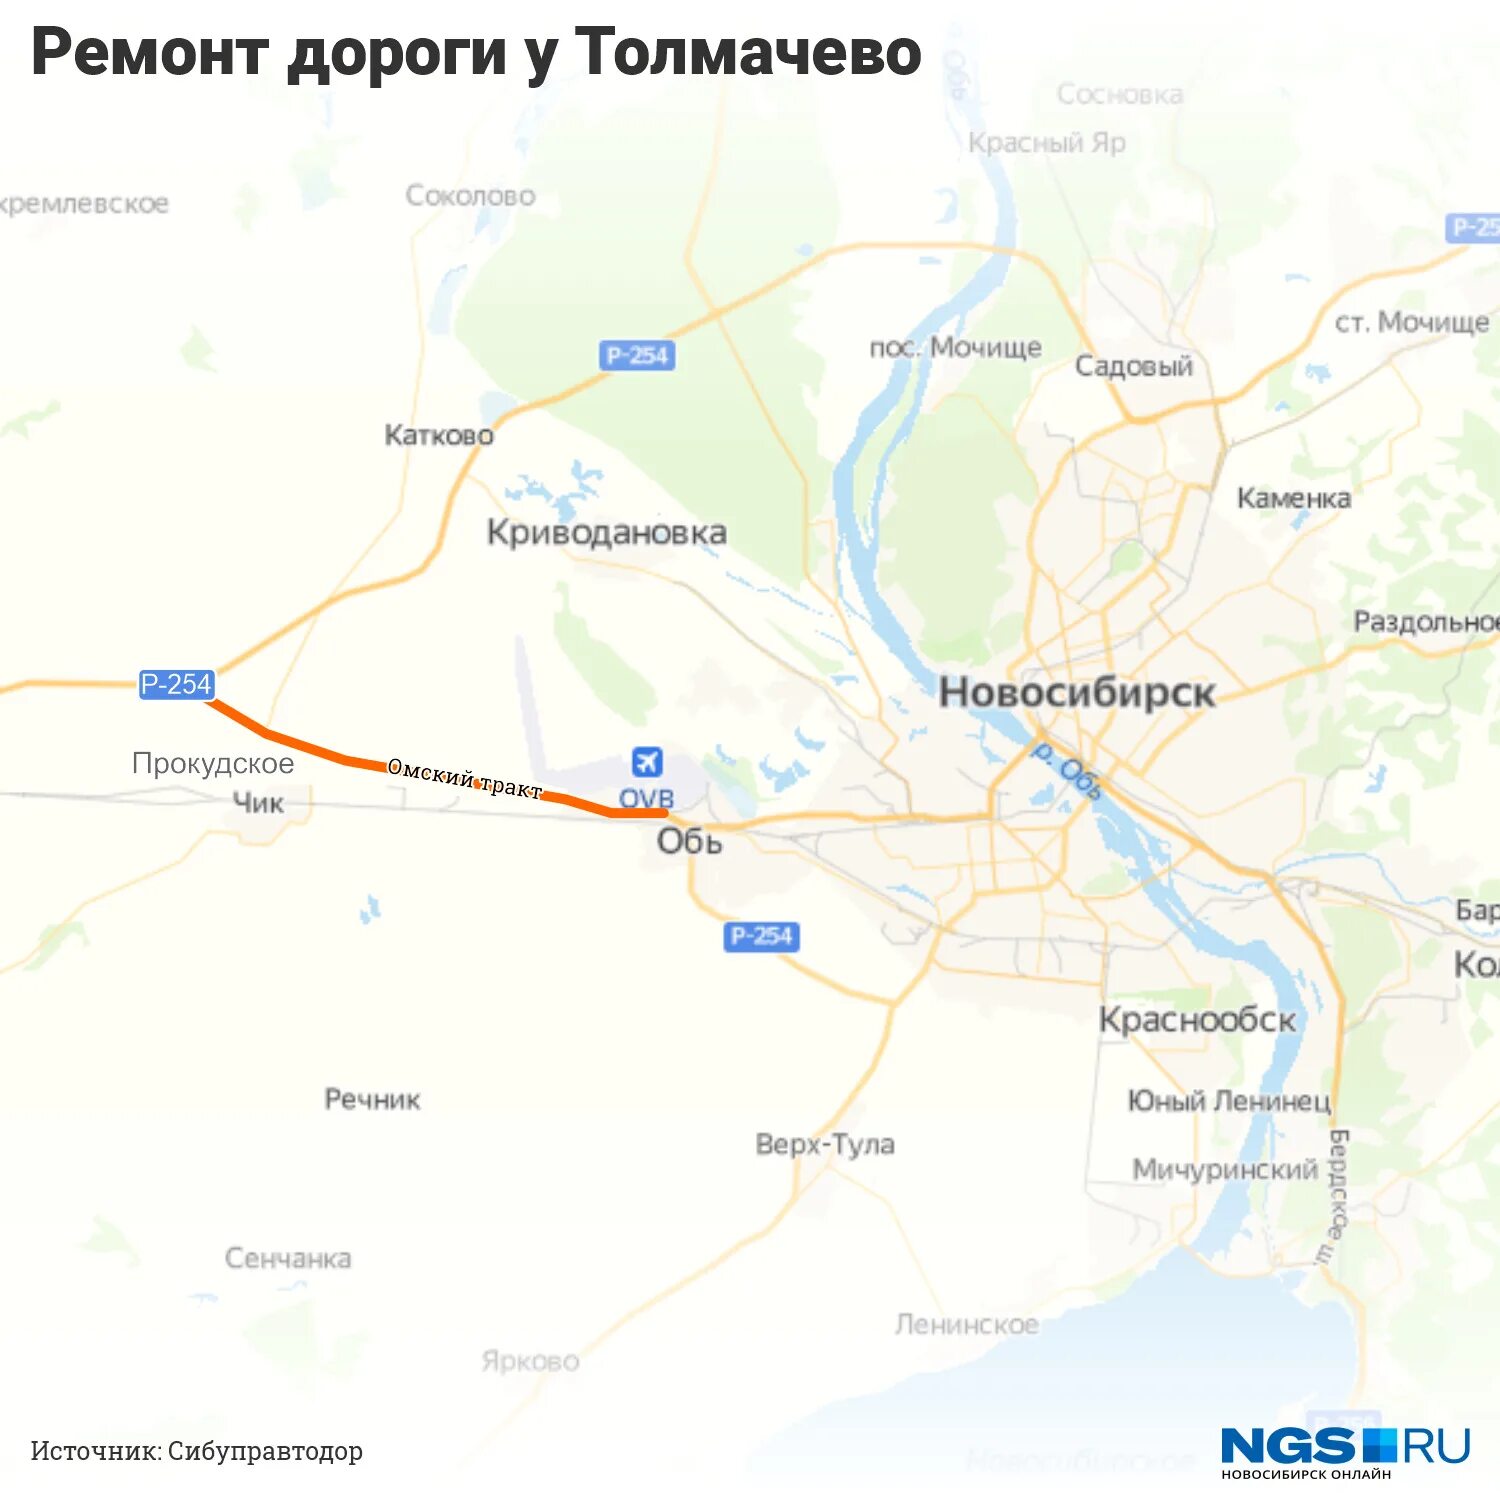 Как доехать до аэропорта толмачева новосибирск. Карта аэропорта Толмачево Новосибирск. Толмачево на карте Новосибирска. Аэропорт Новосибирск на карте города. Аэропорт Толмачево Новосибирск на карте города.